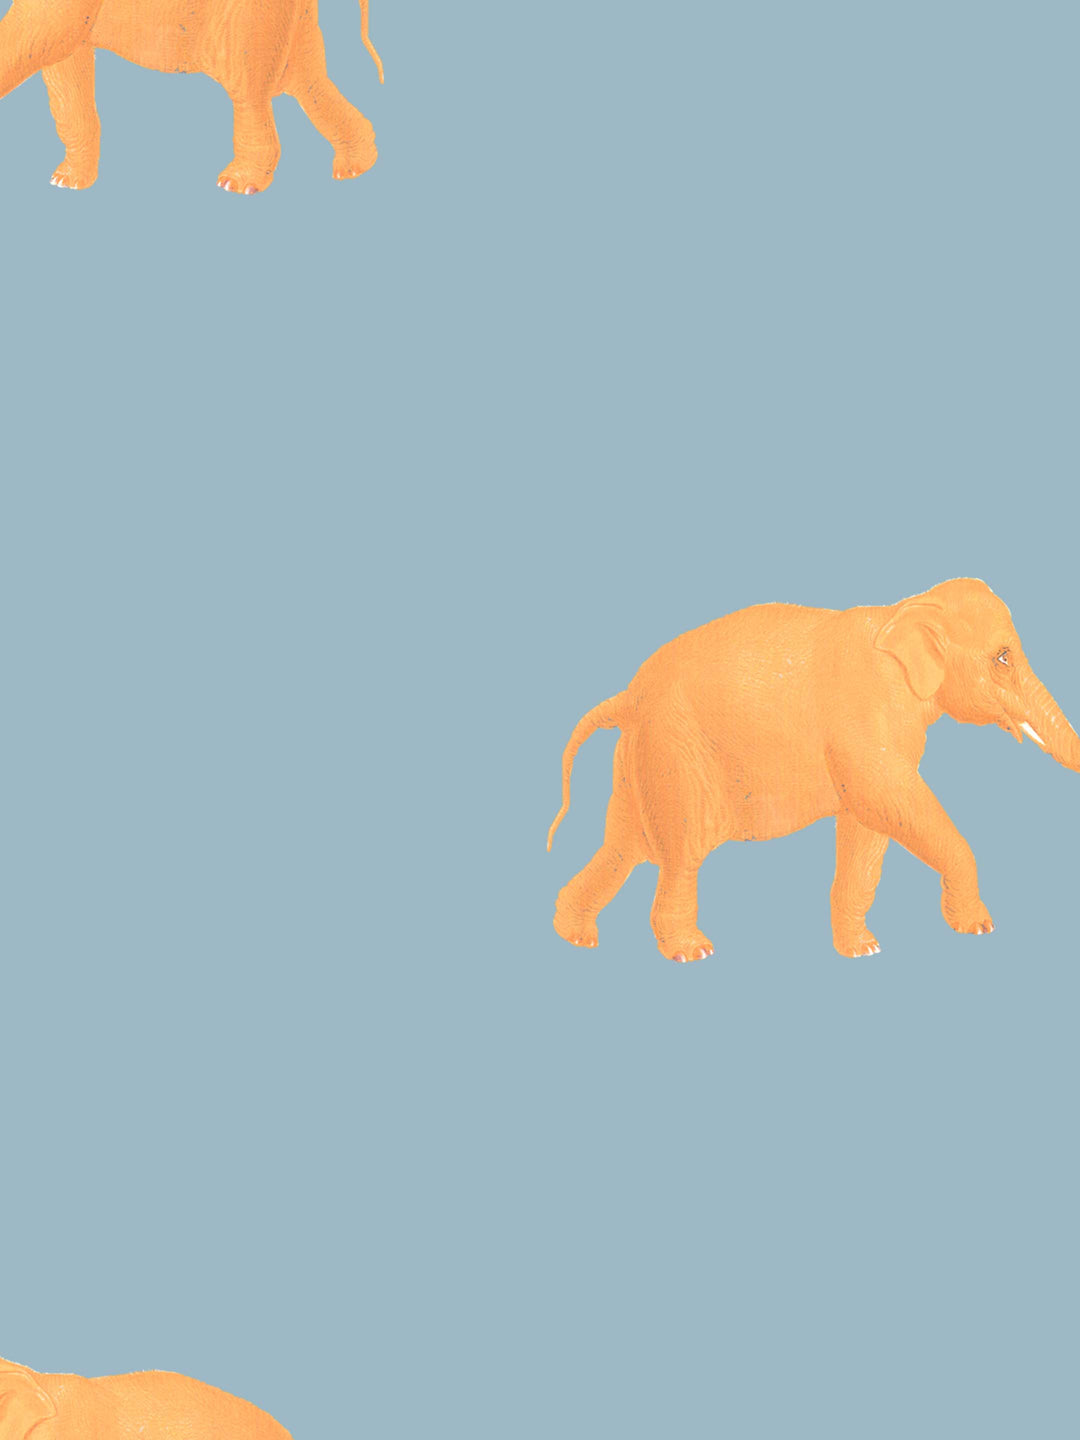 Eli (Our beloved Elephant) Wallpaper - Orange on Blue